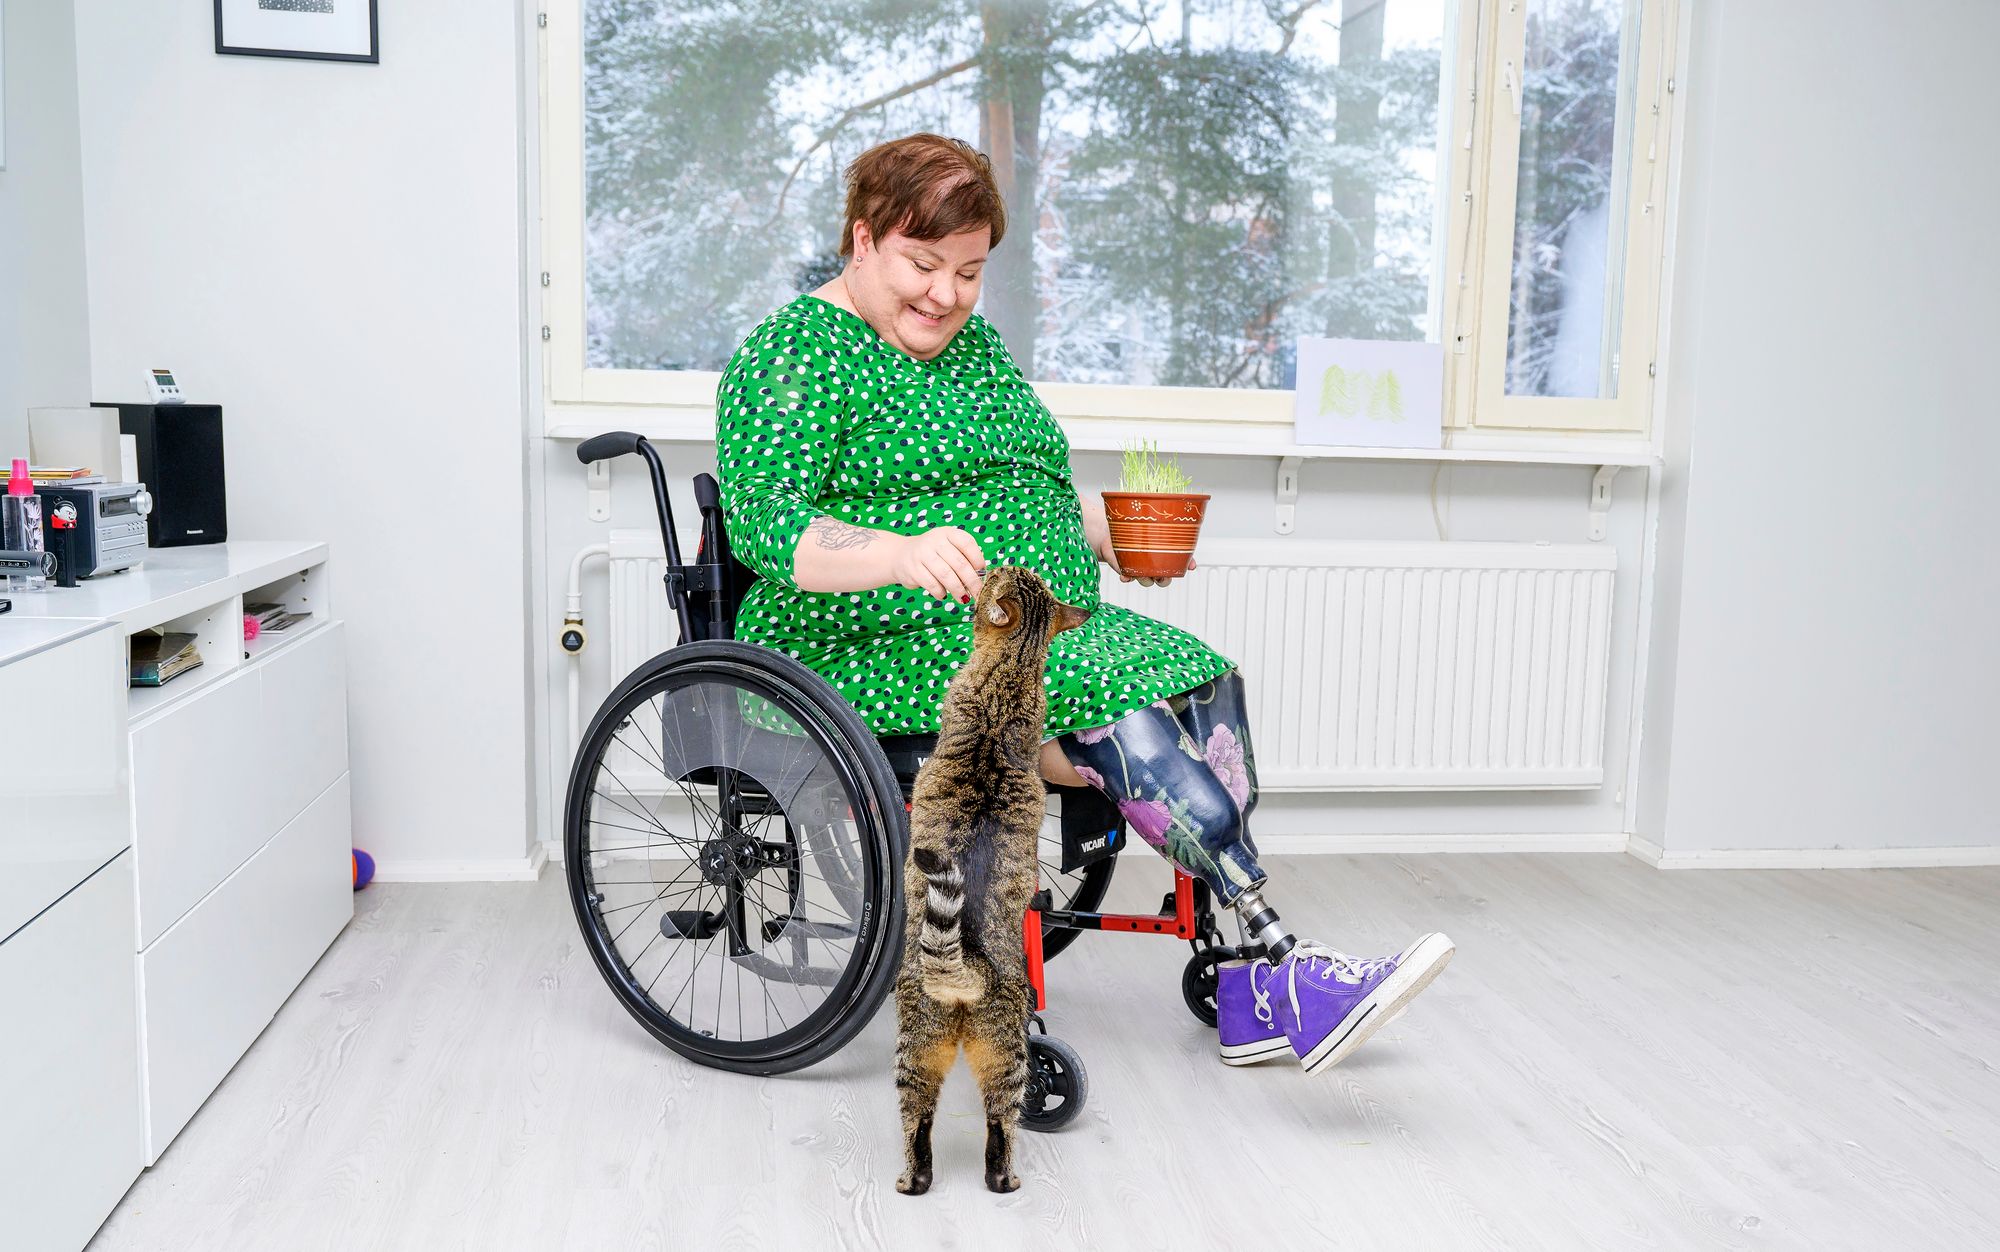 Amputaation jälkeen Riikka Lessman on ollut tyytyväinen uusiin jalkoihinsa, joiden avulla hän uskoo kävelevänsä vuoden kuluttua ilman apuvälineitä.